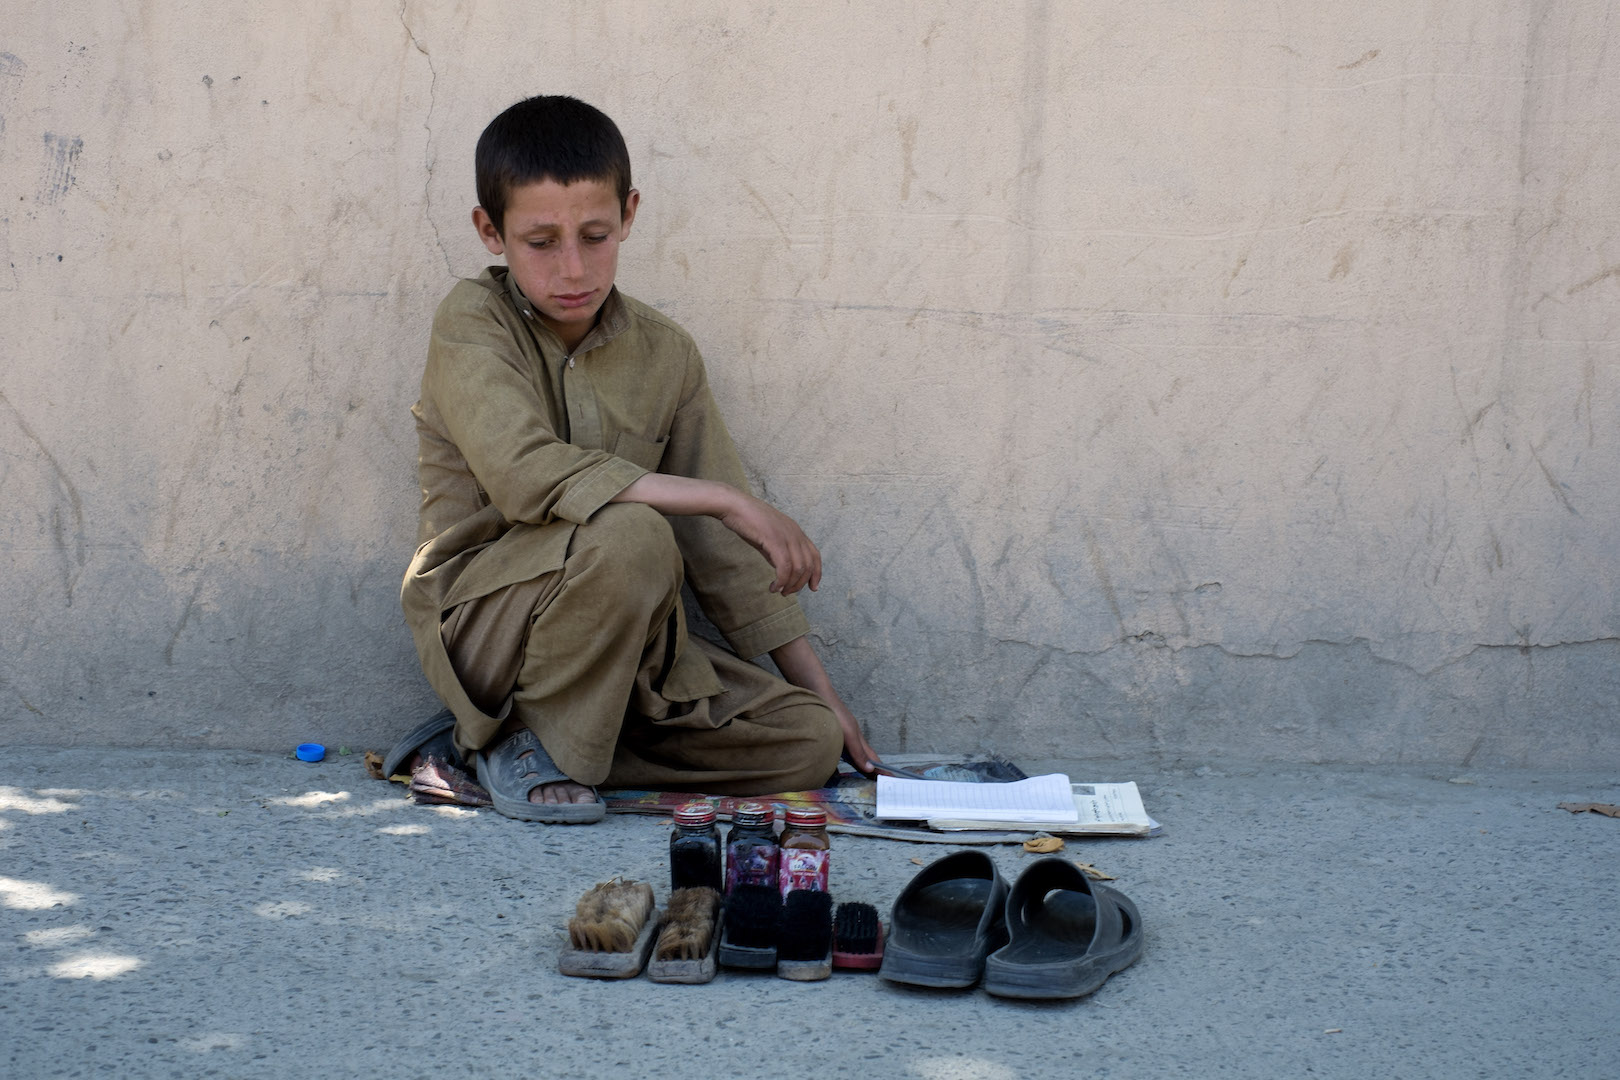 A shoeshine boy in Kabul